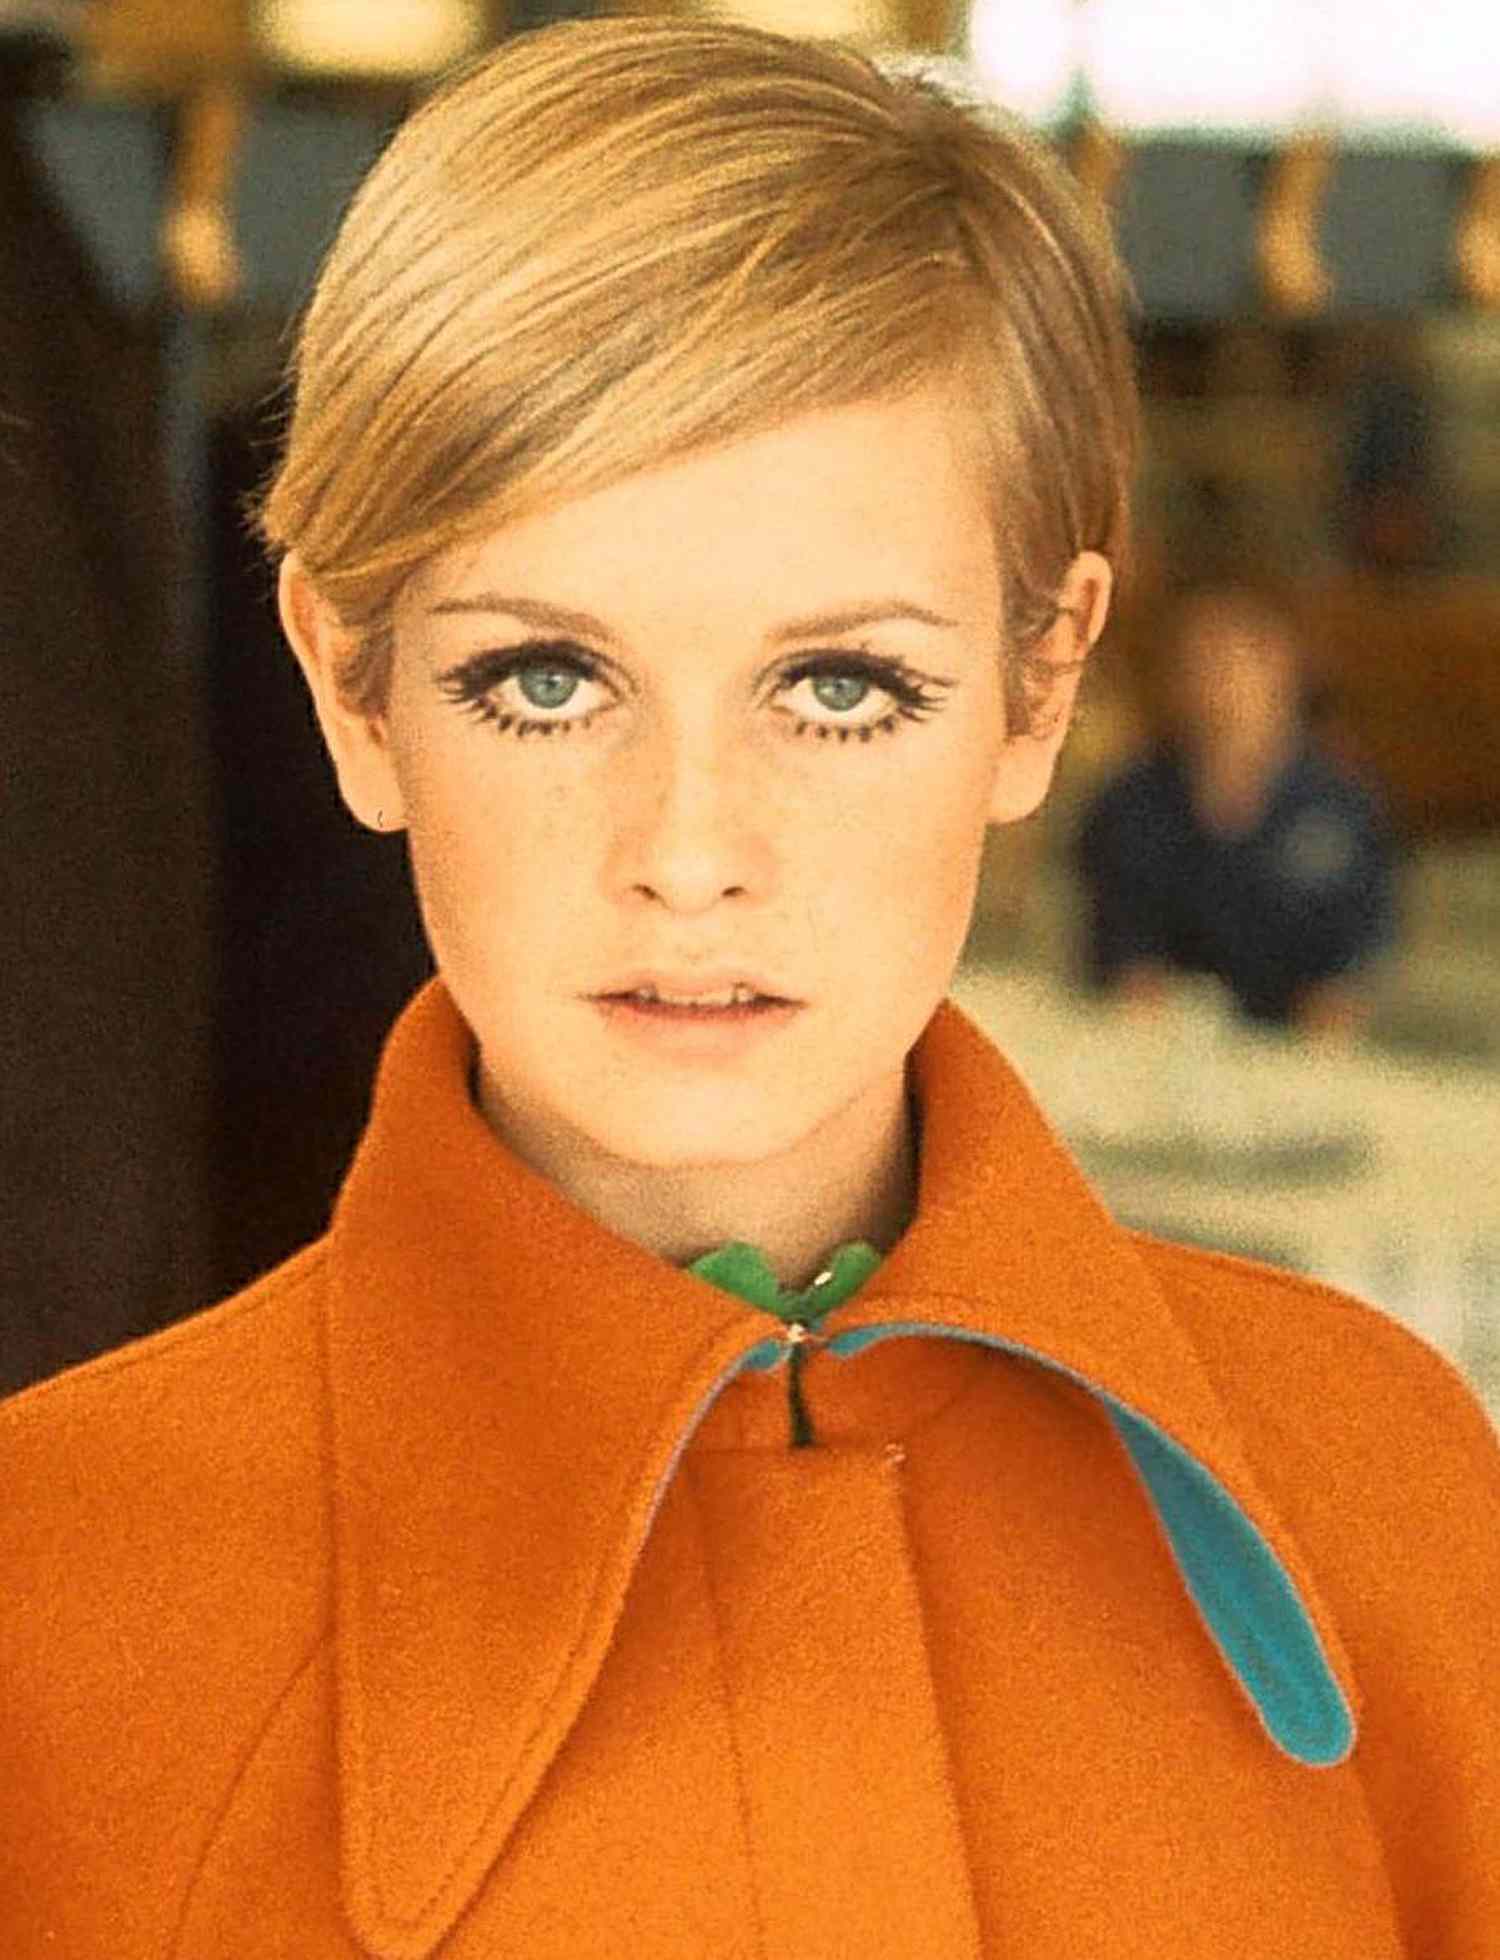 Image of Twiggy wearing 1960s eye makeup